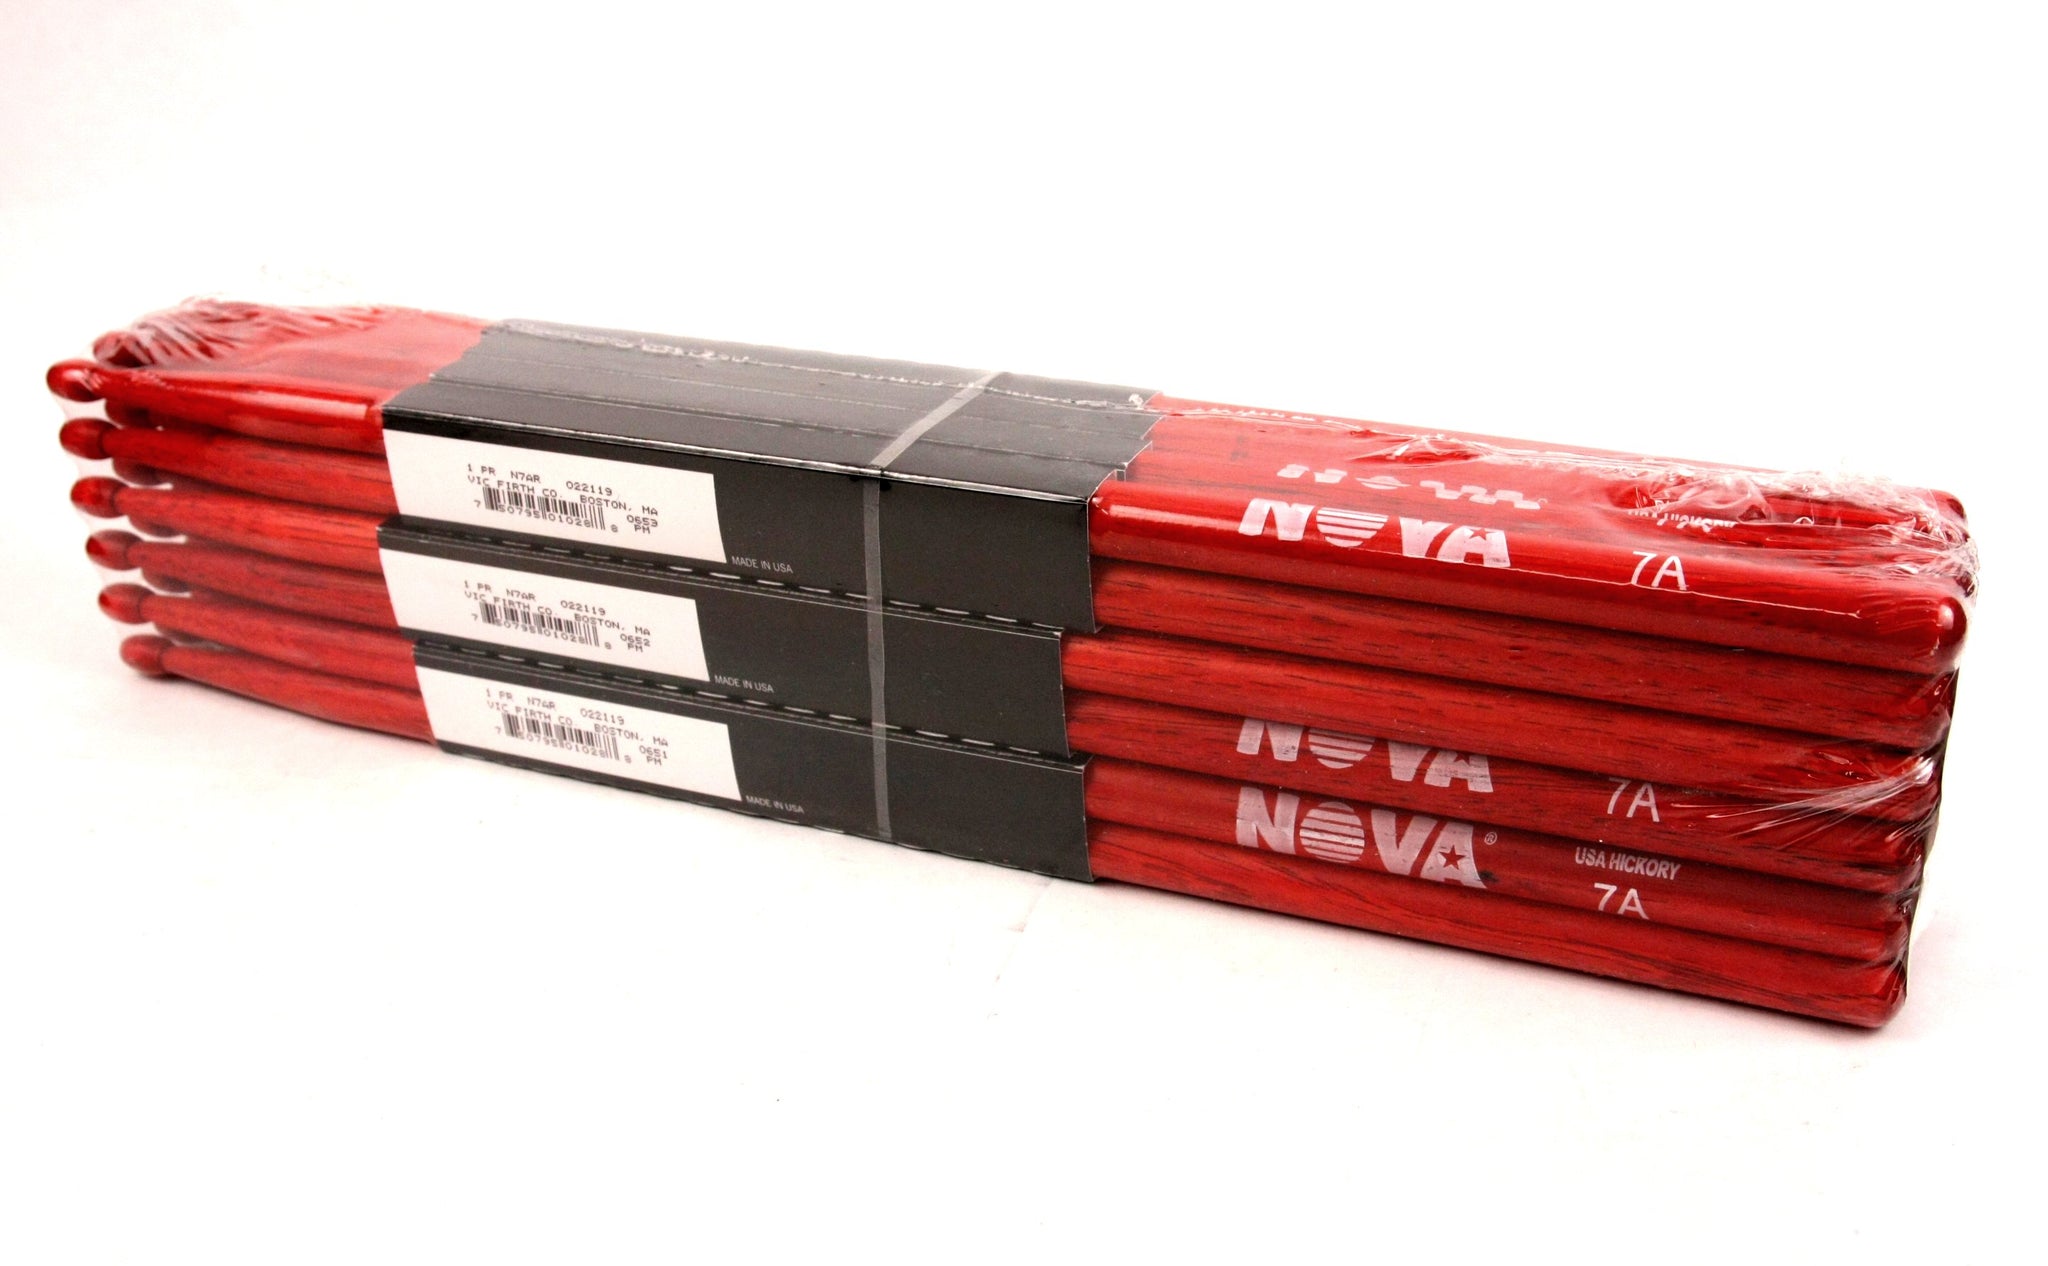 7A Red - Nylon tip Baguette batterie Nova